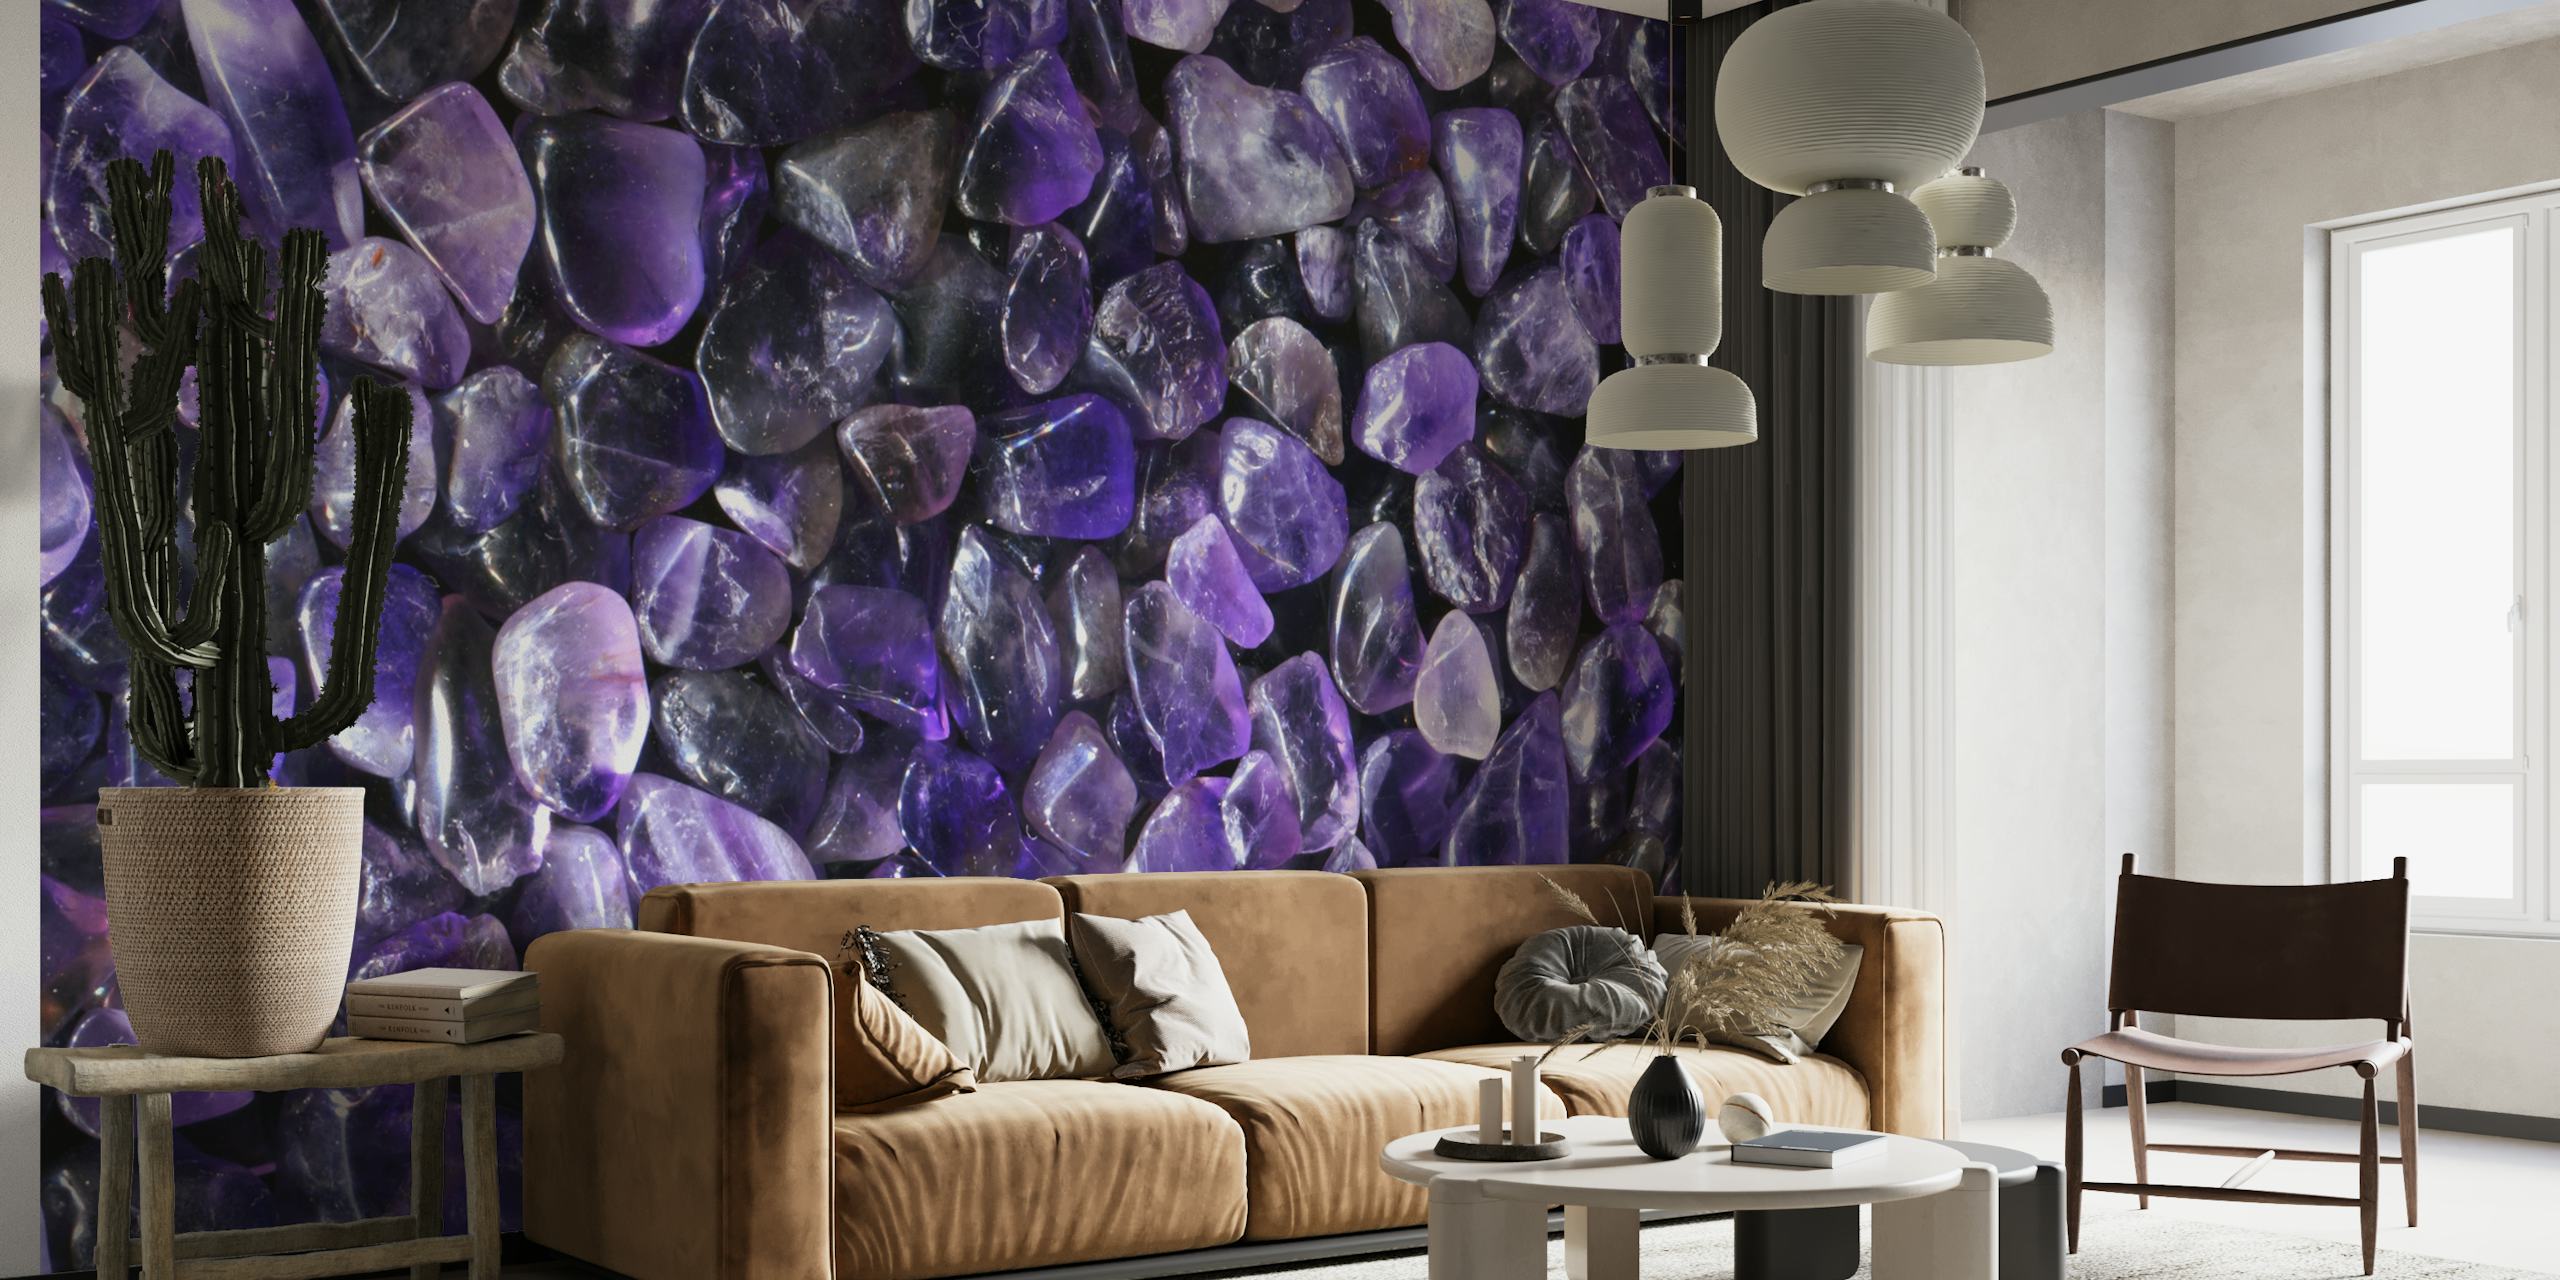 Mural de pared de piedras preciosas de color lila con una lujosa extensión de piedras cristalinas de color púrpura